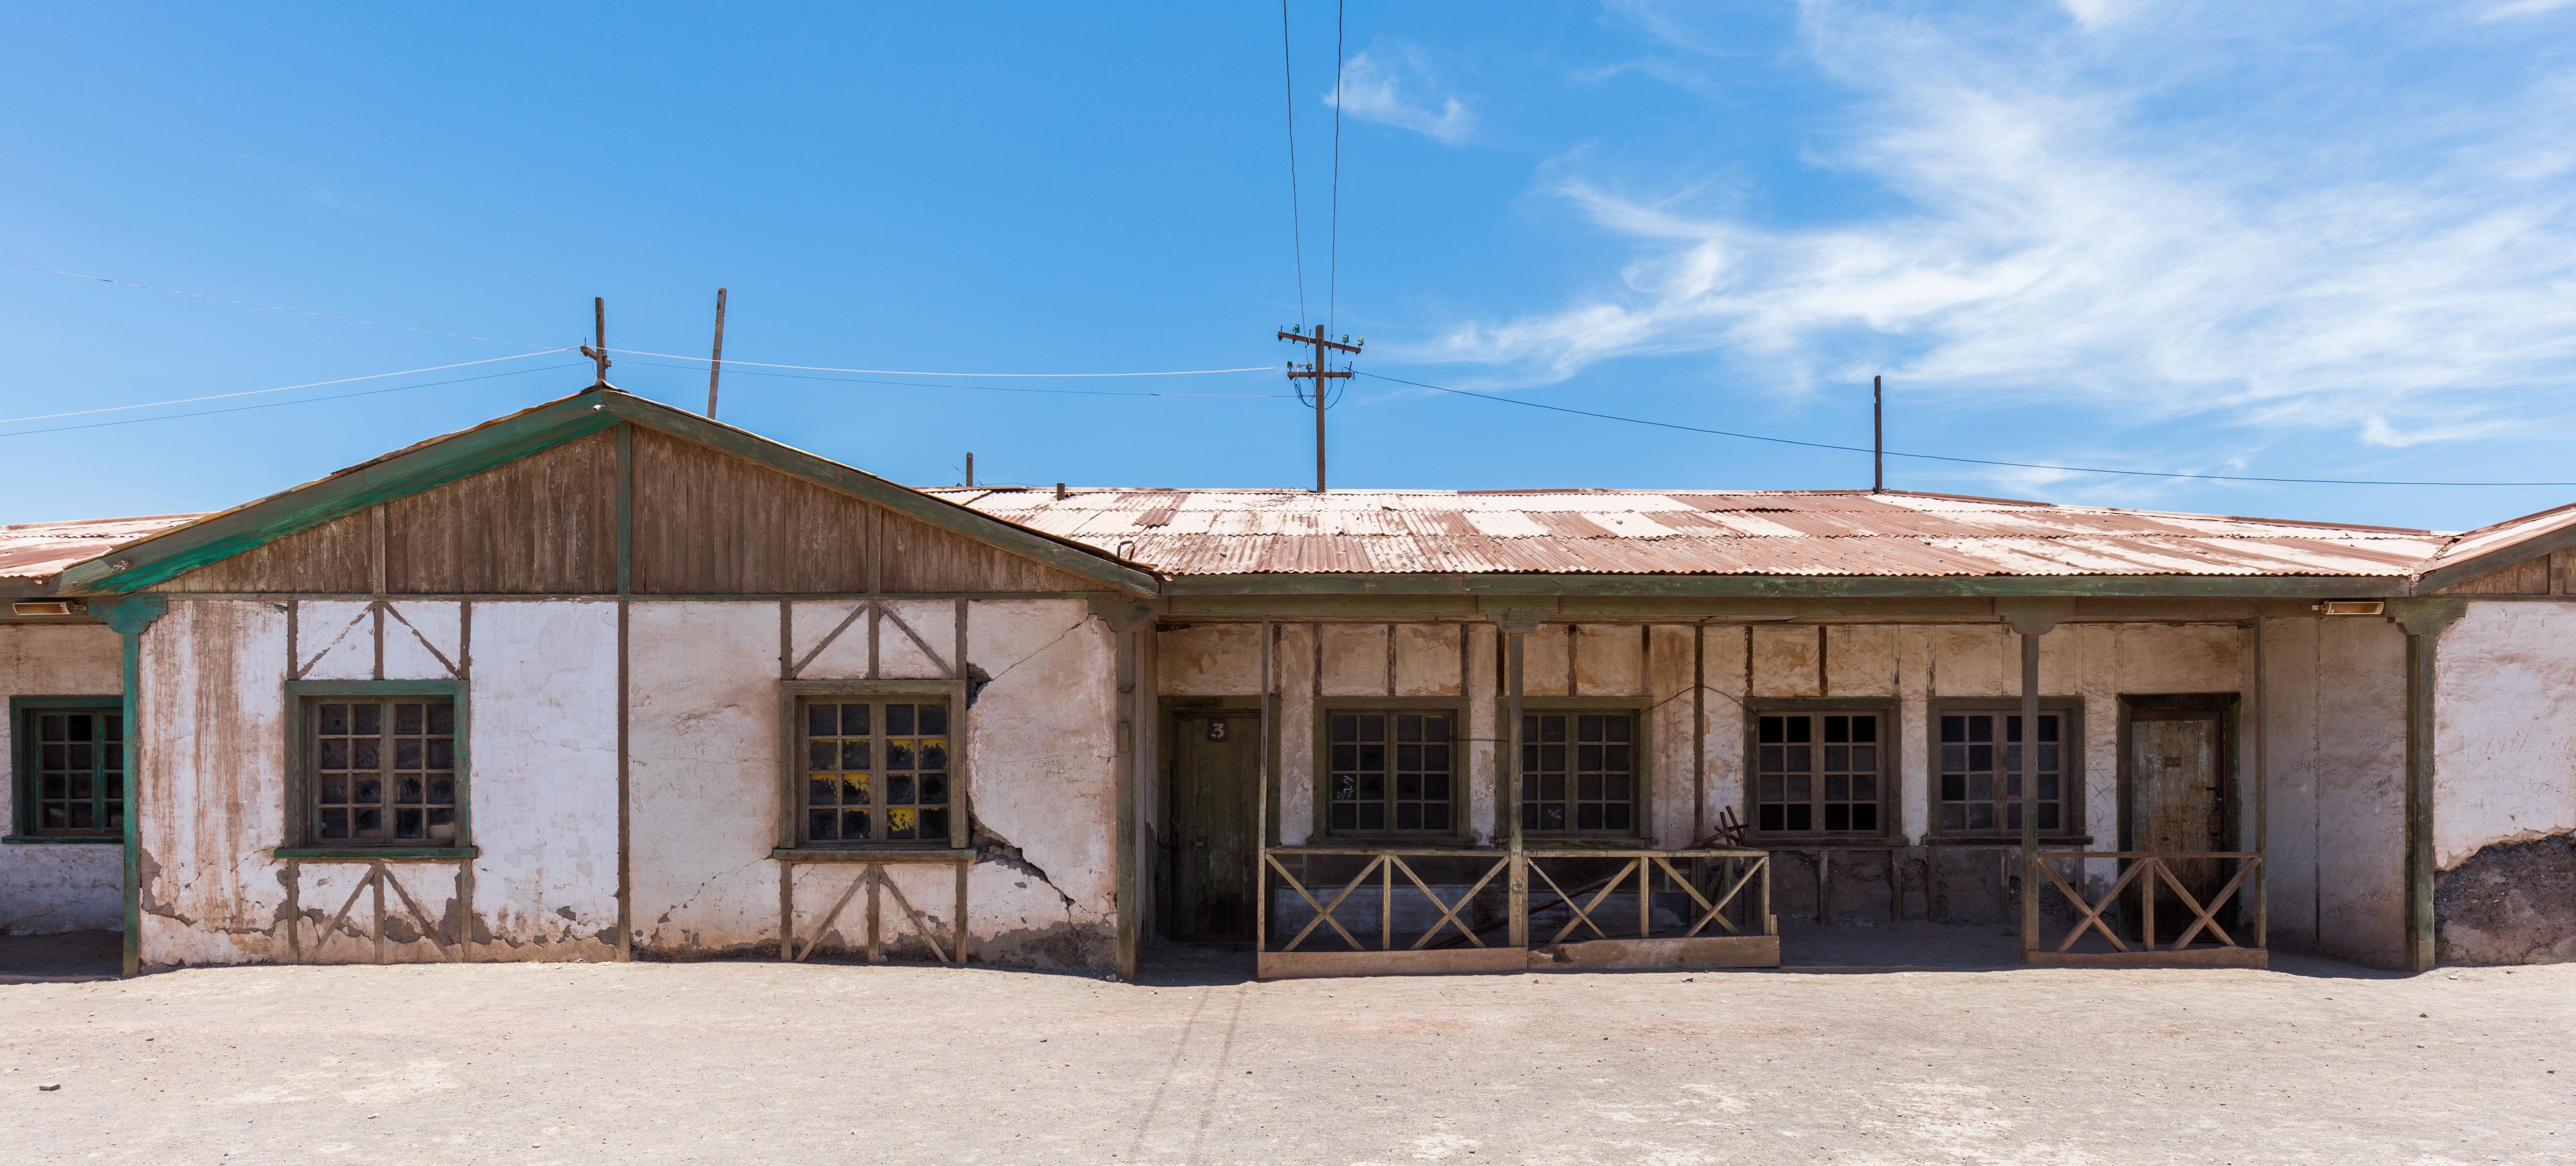 Oficinas salitreras de Humberstone y Santa Laura, Chile, 2016-02-11, DD 48